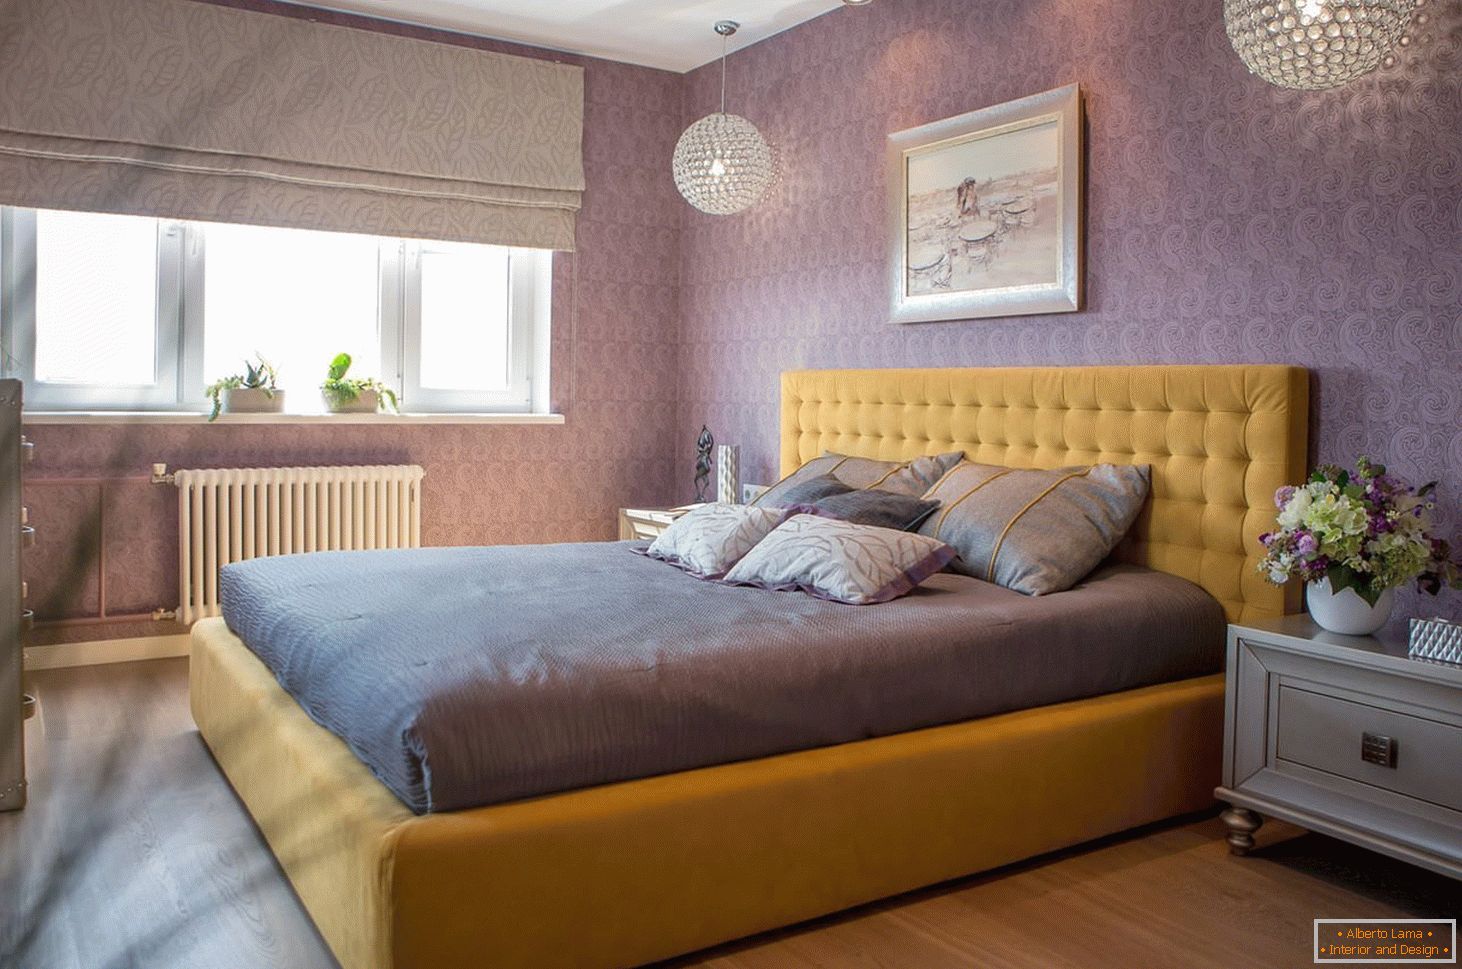 Sárga ágy lila belsővel